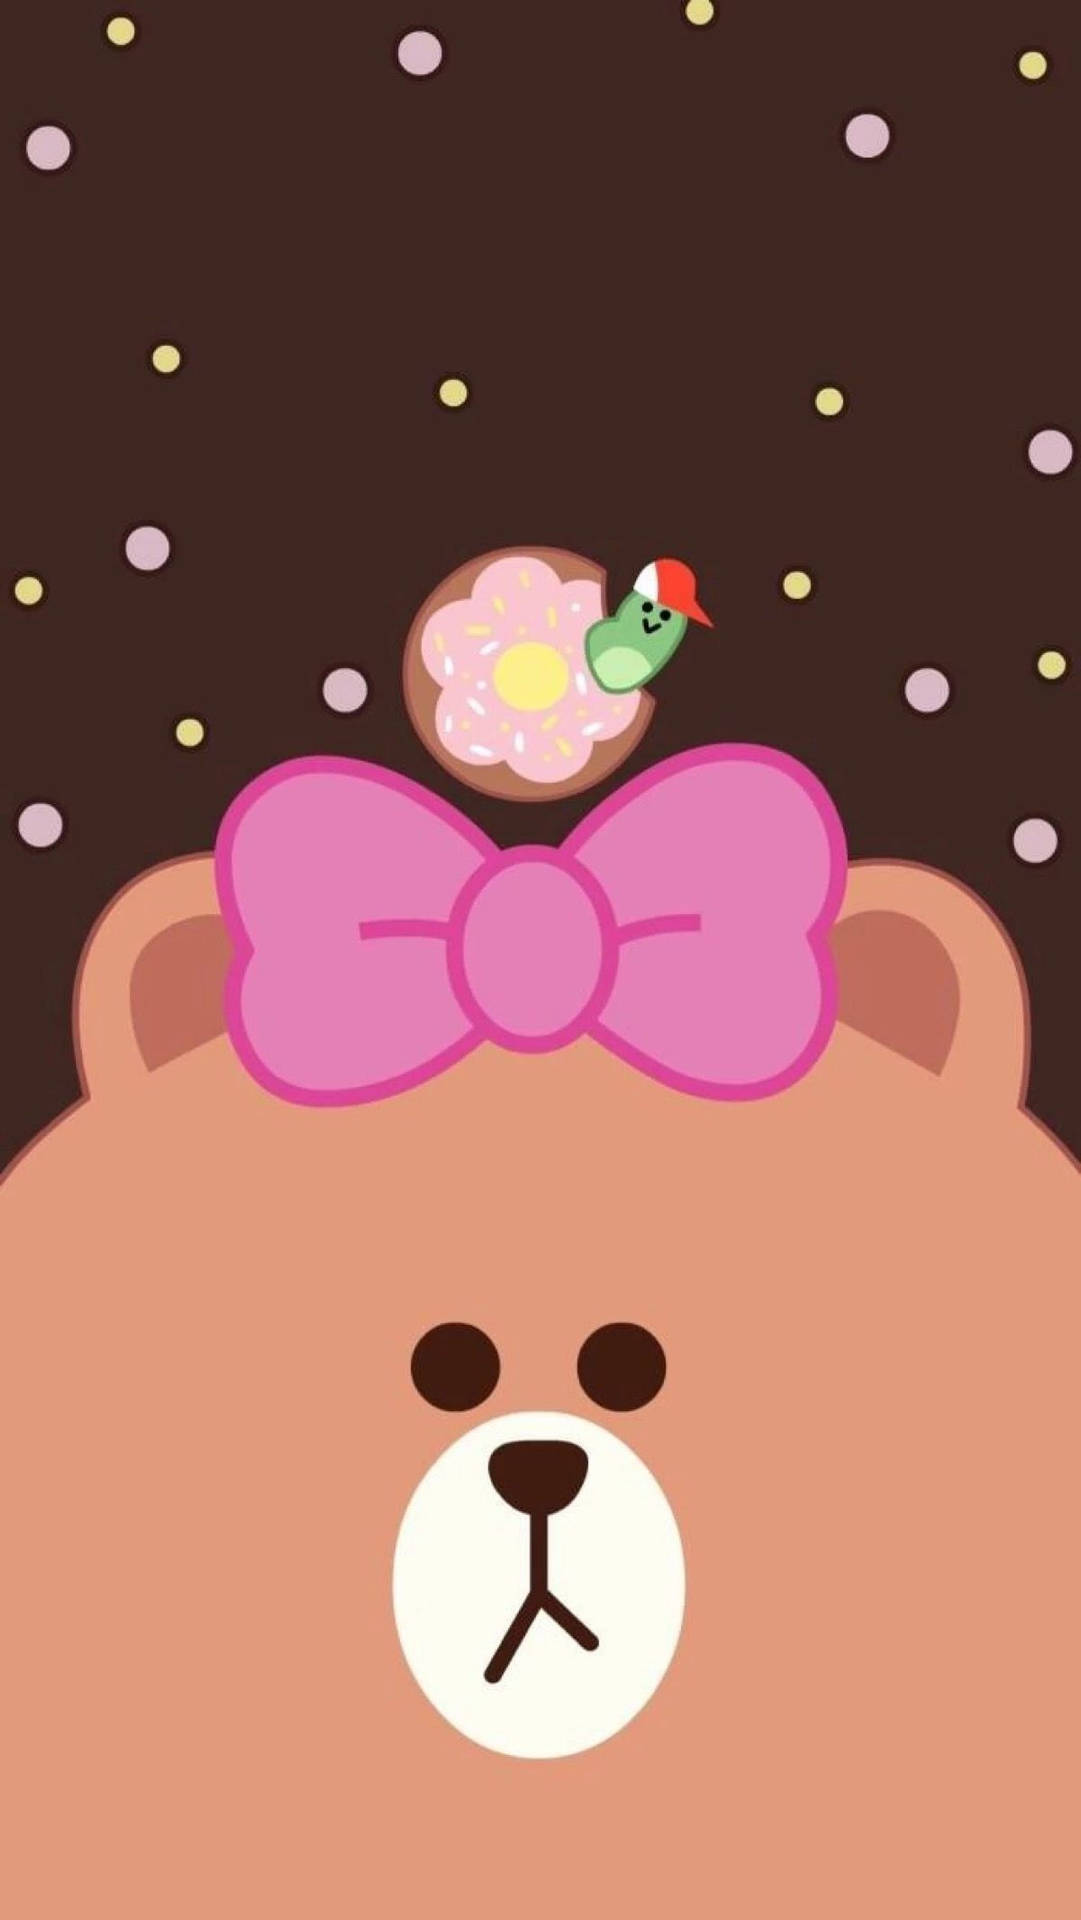 Choco Bear Cartoon Phone Wallpaper